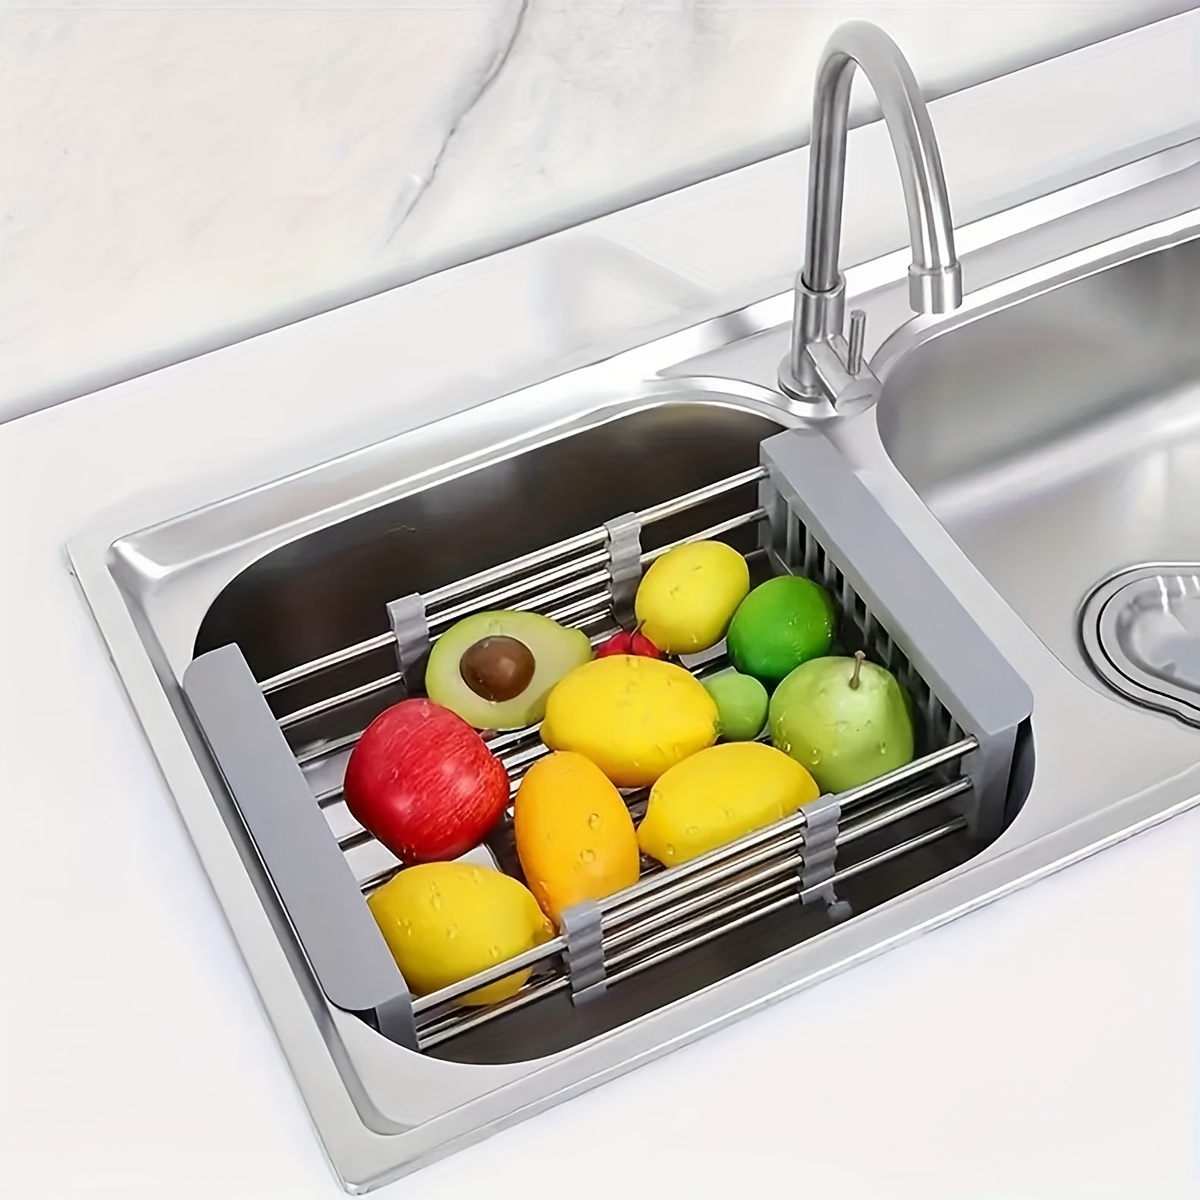 Kitchen Sink Drain Basket Retractable Stainless Steel Sink